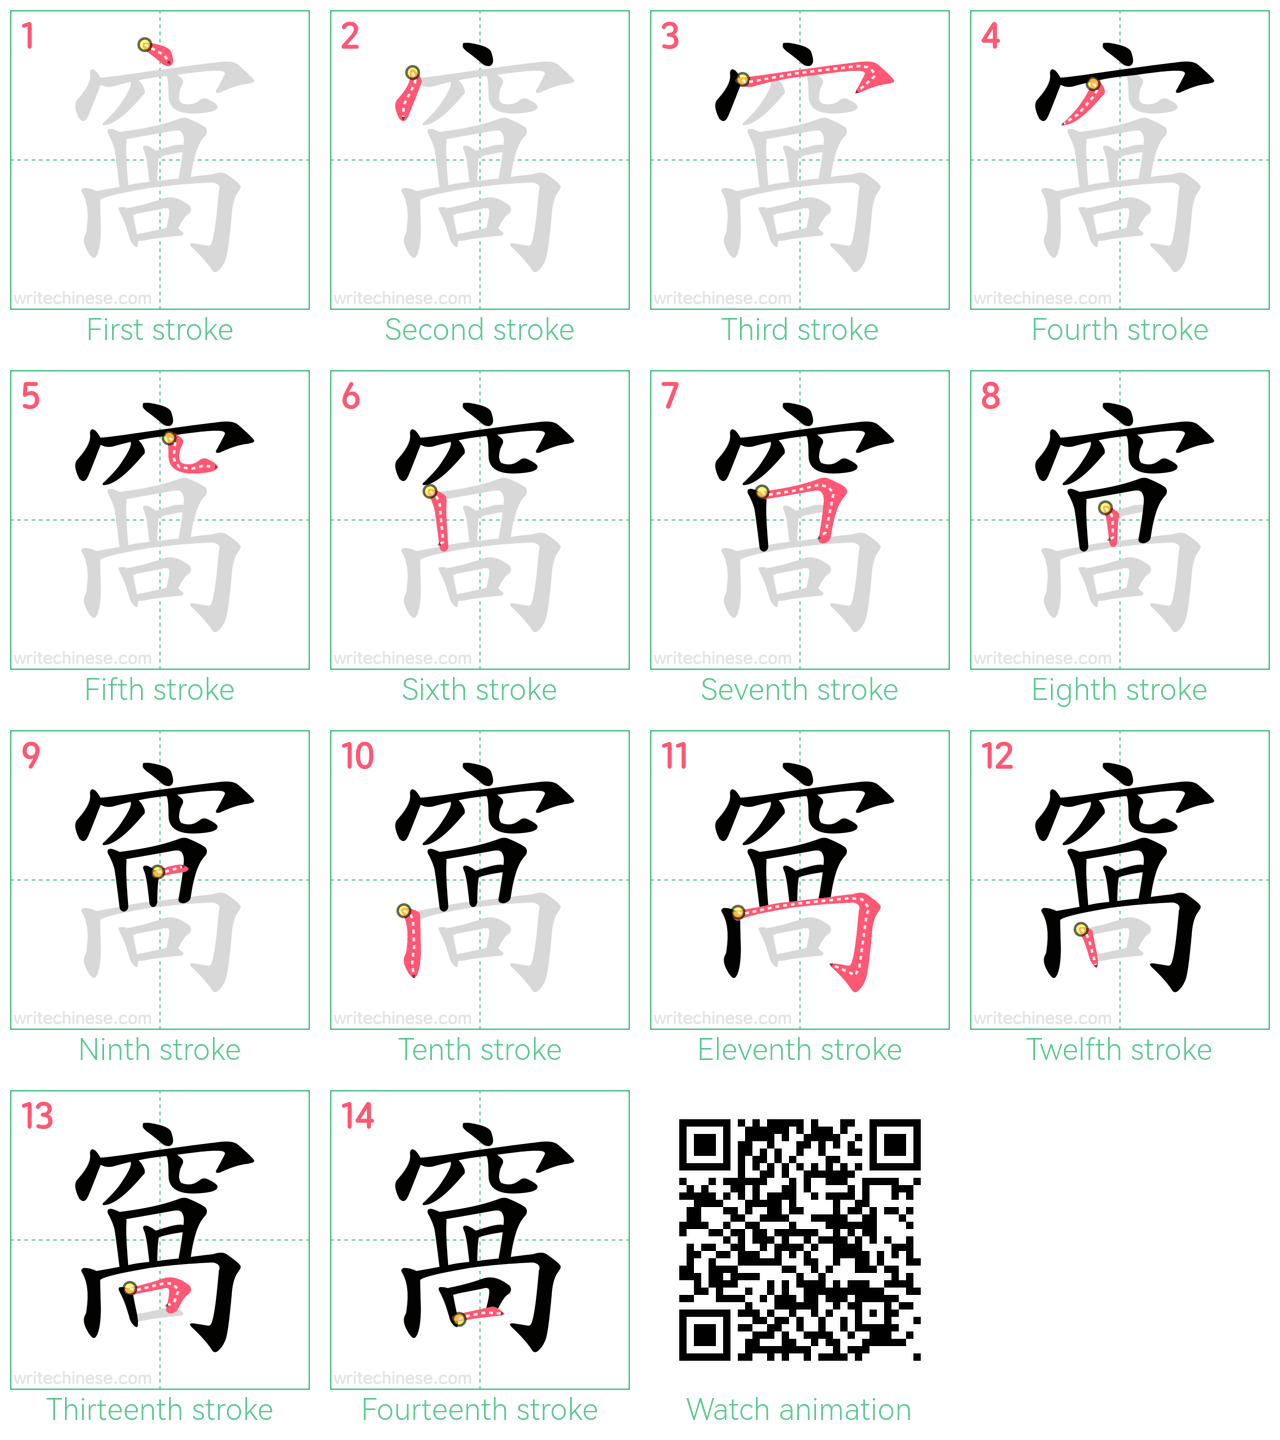 窩 step-by-step stroke order diagrams